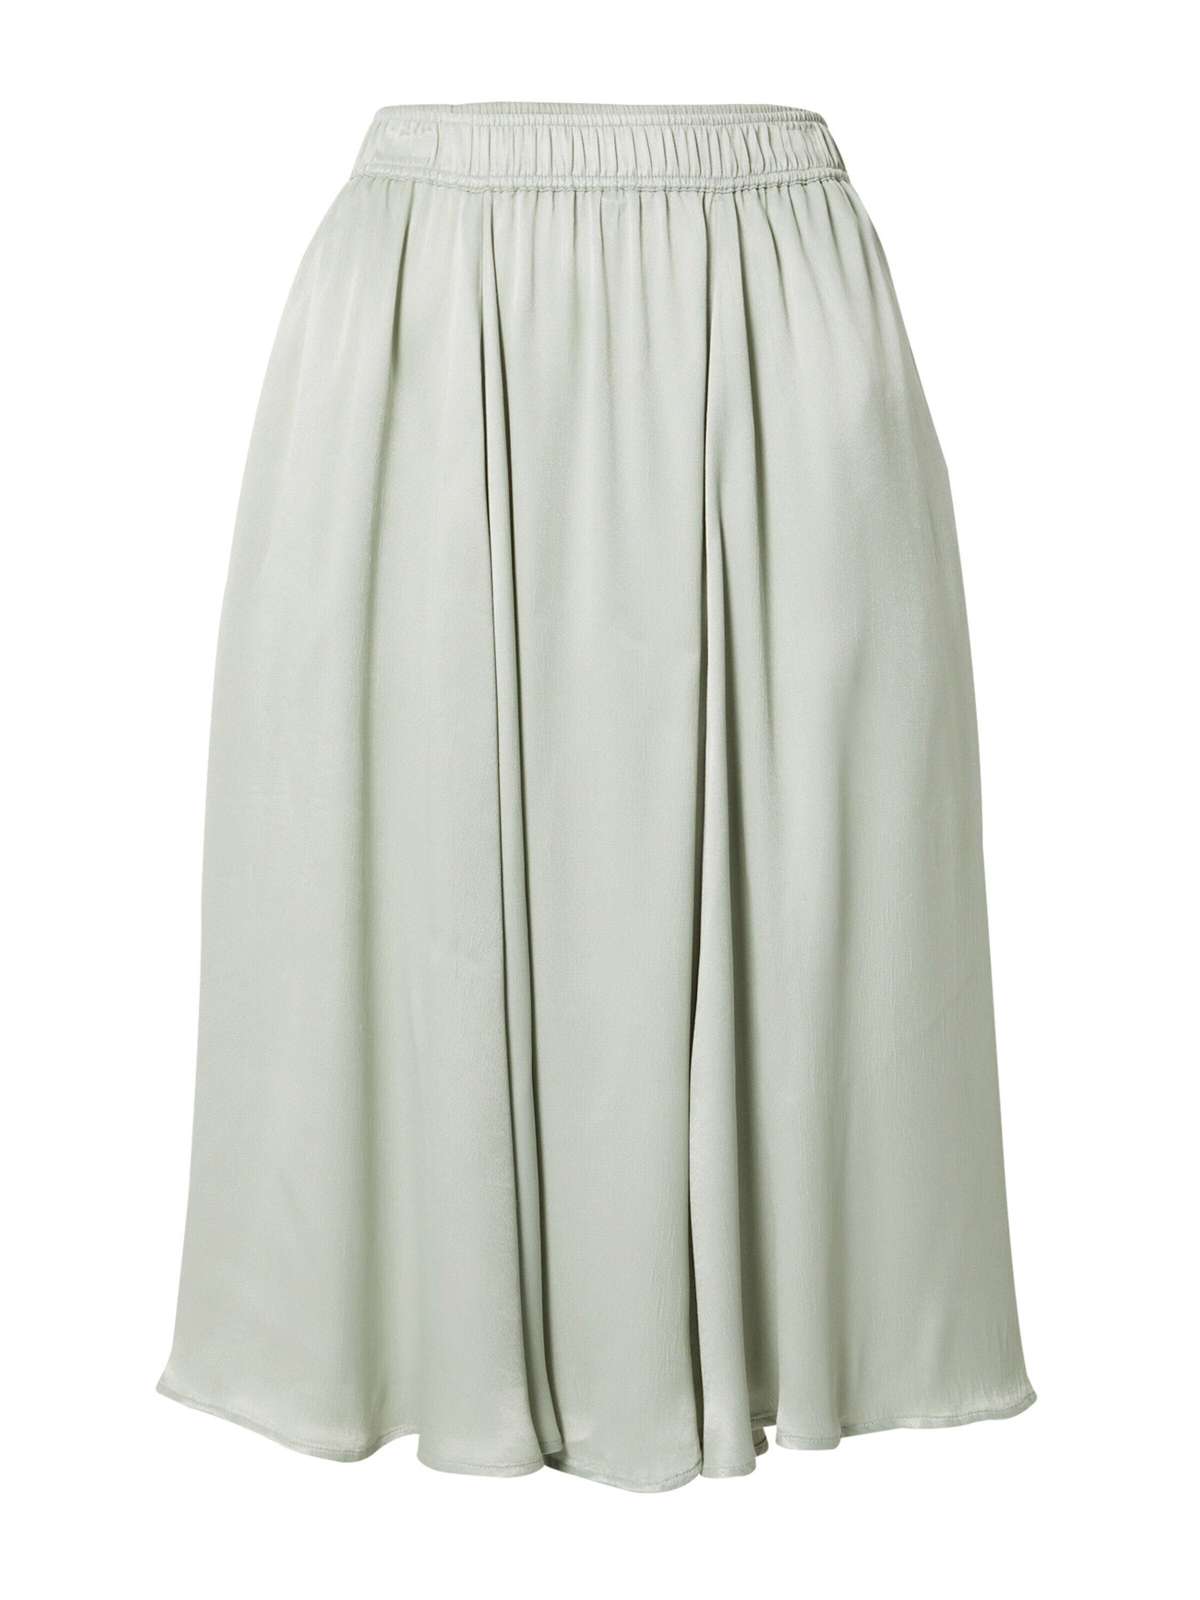 Плиссированная юбка Mimi (1 шт.) складки